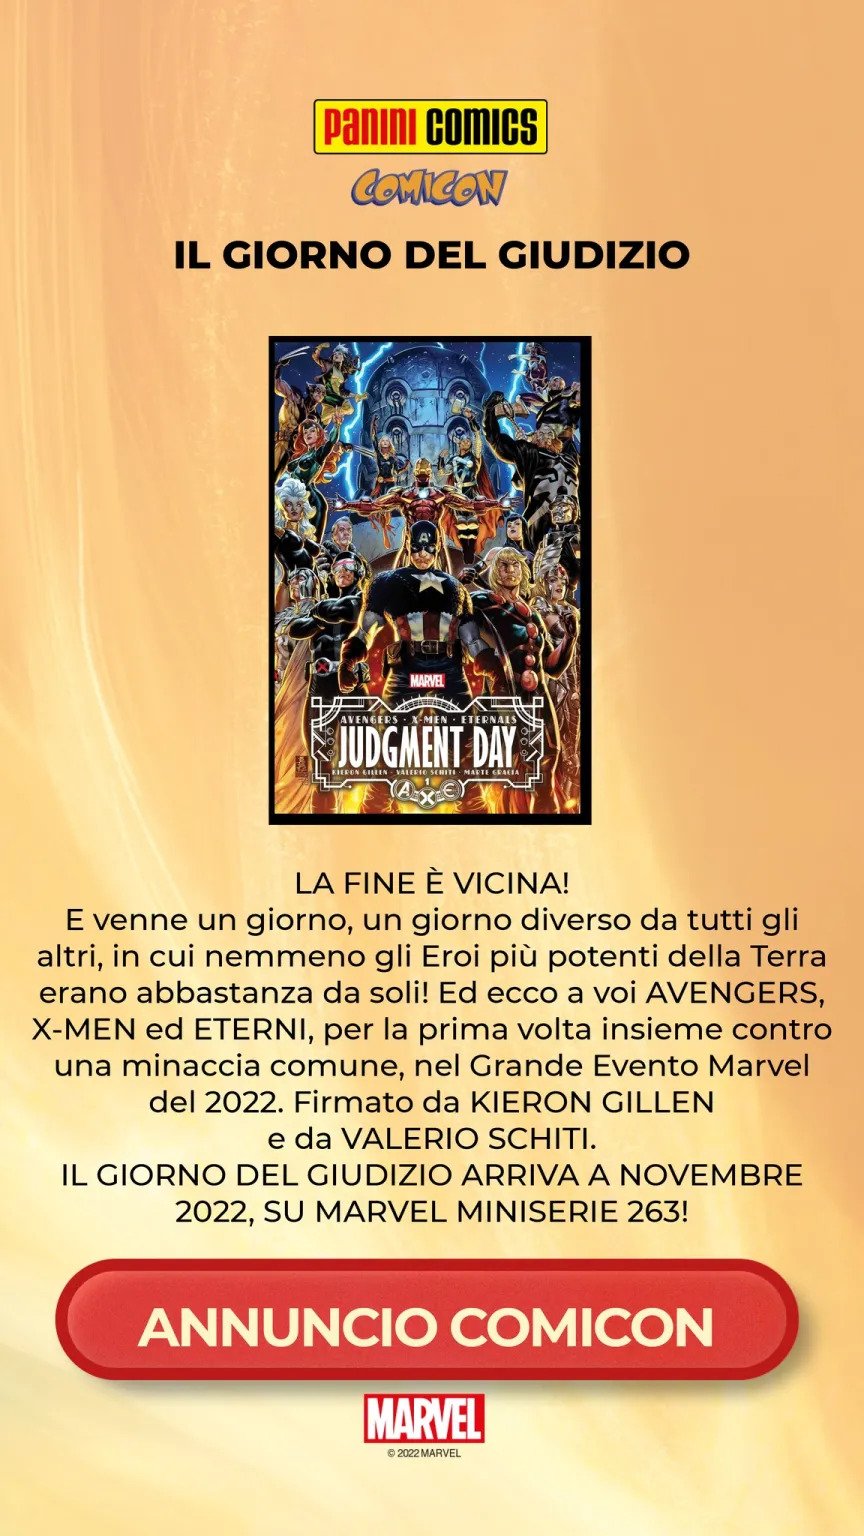 Panini Comics: tutti i fumetti Marvel e DC annunciati al Napoli Comicon 2022